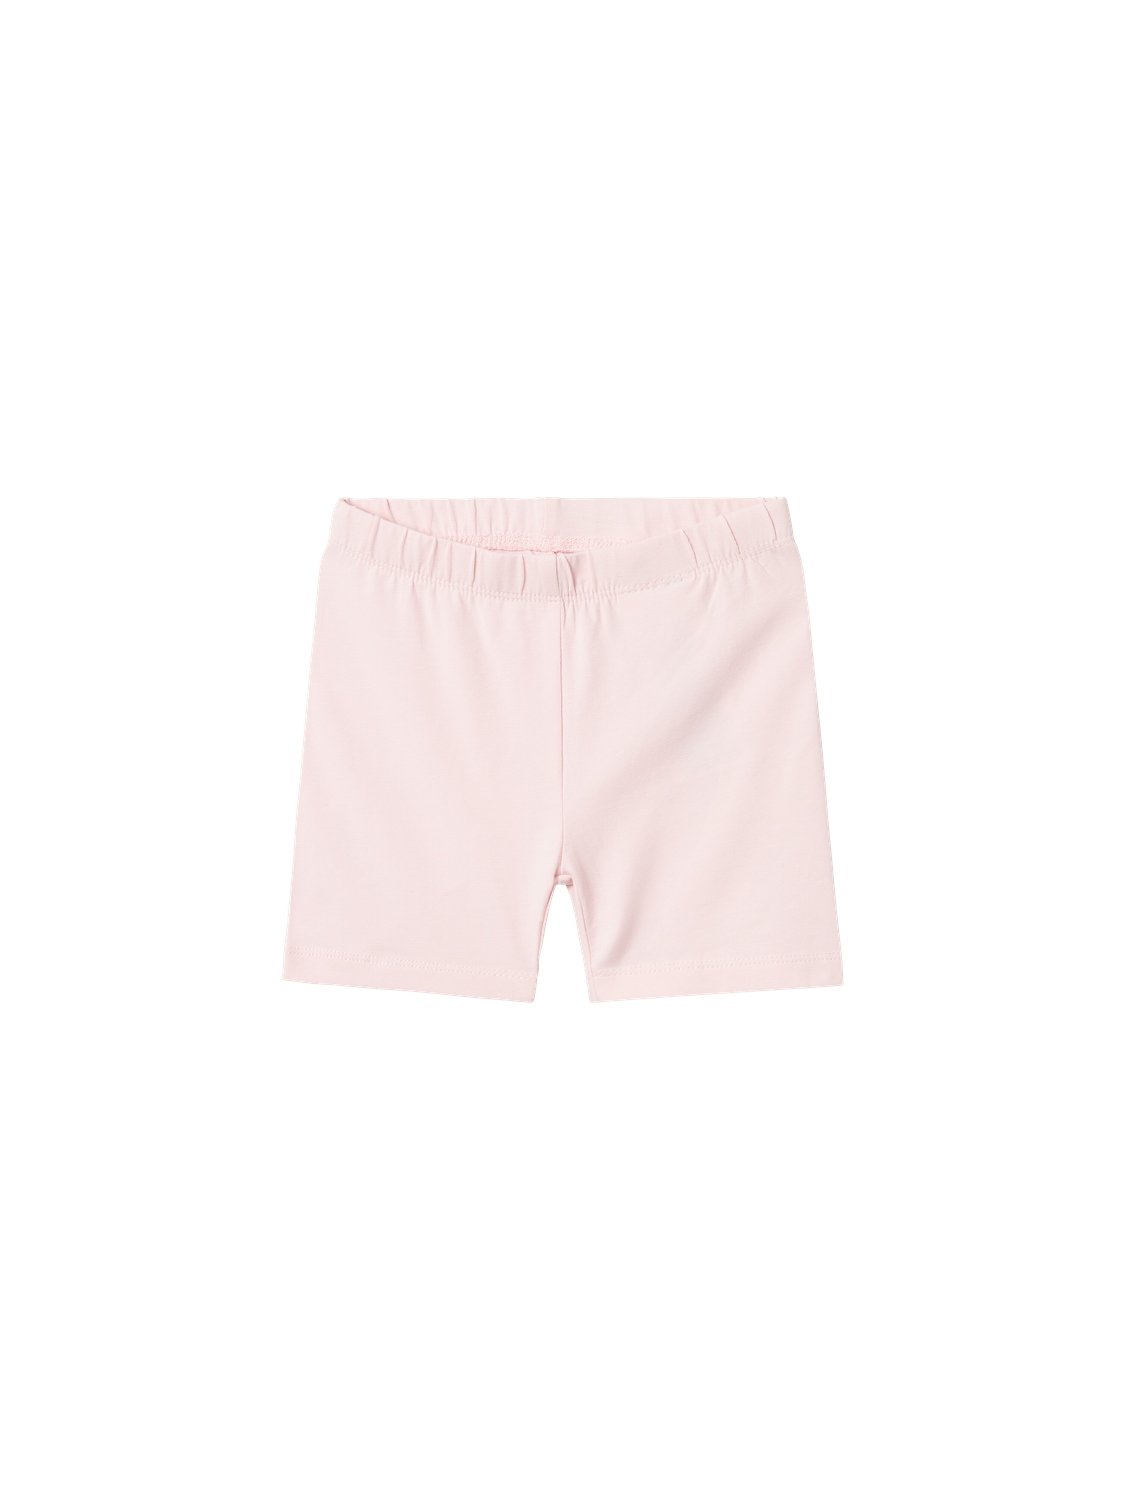 Name it VIVIAN lühikesed retuusid Parfait Pink Lasteriided - HellyK - Kvaliteetsed lasteriided, villariided, barefoot jalatsid